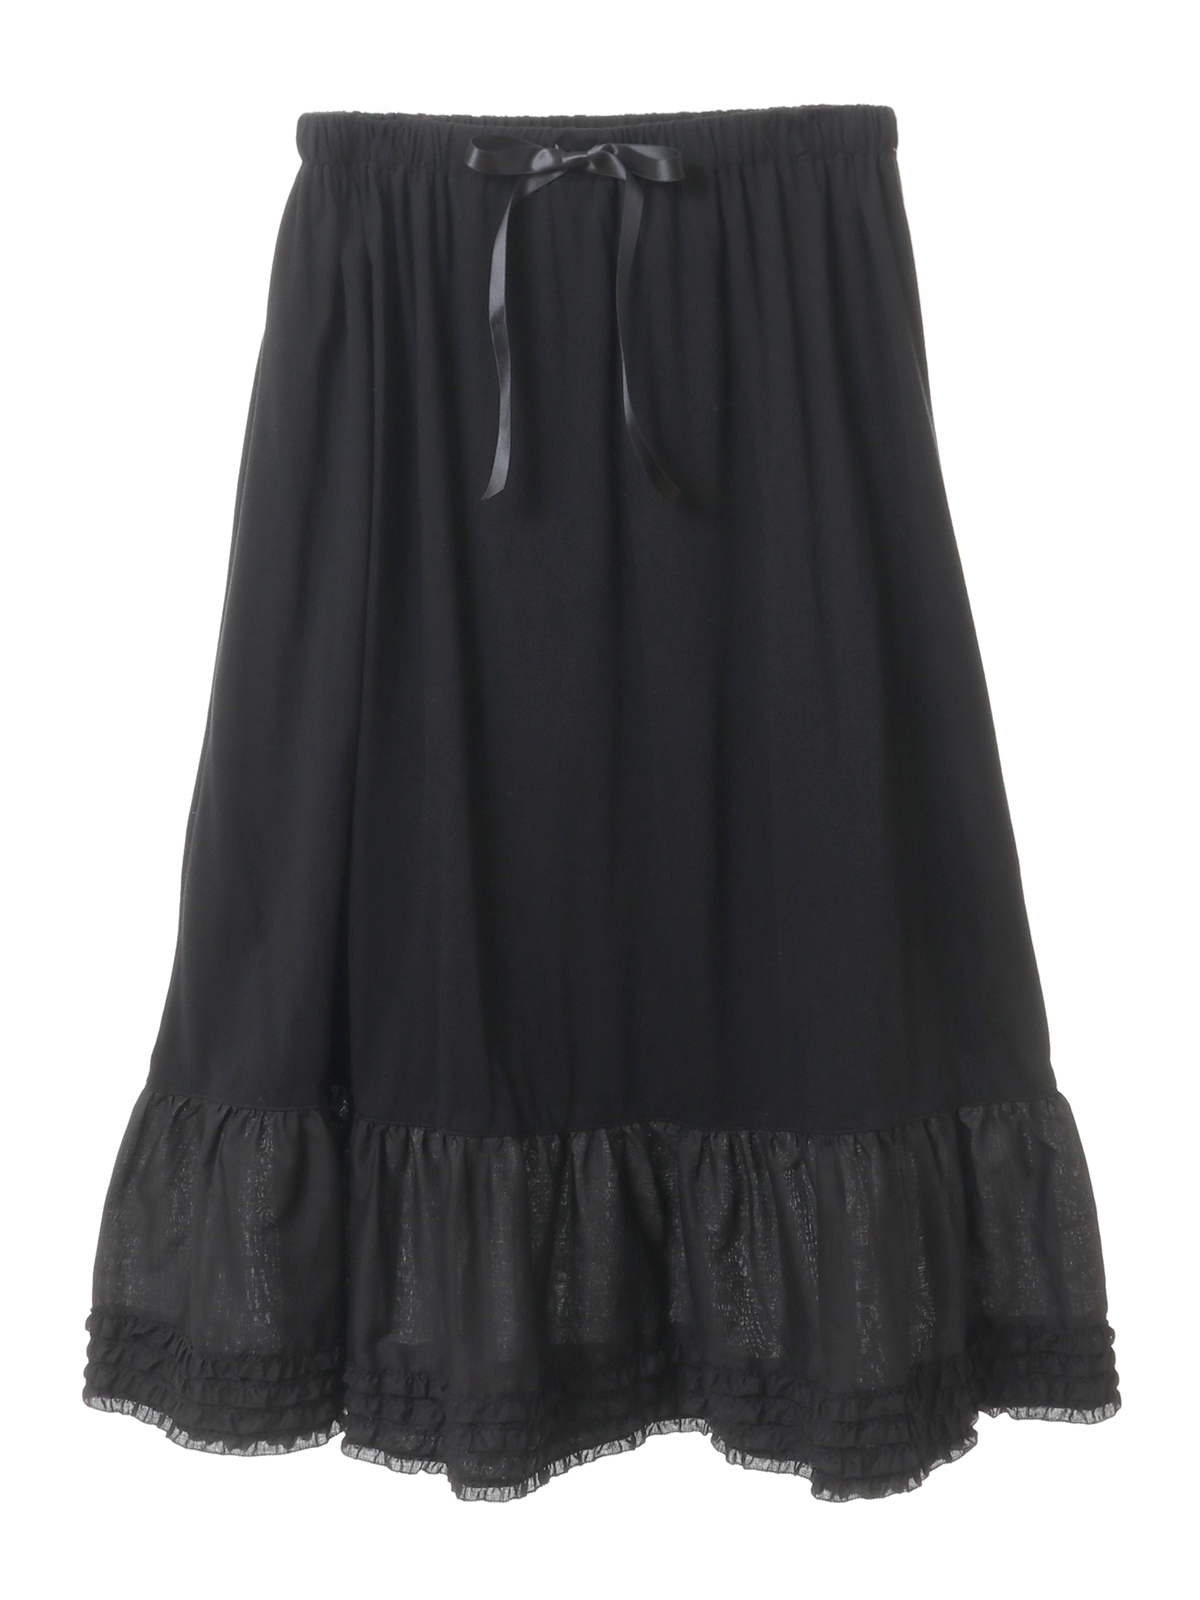 284ピンクハウス綿ローン濃紺のスカートスカート丈75cm - ロングスカート